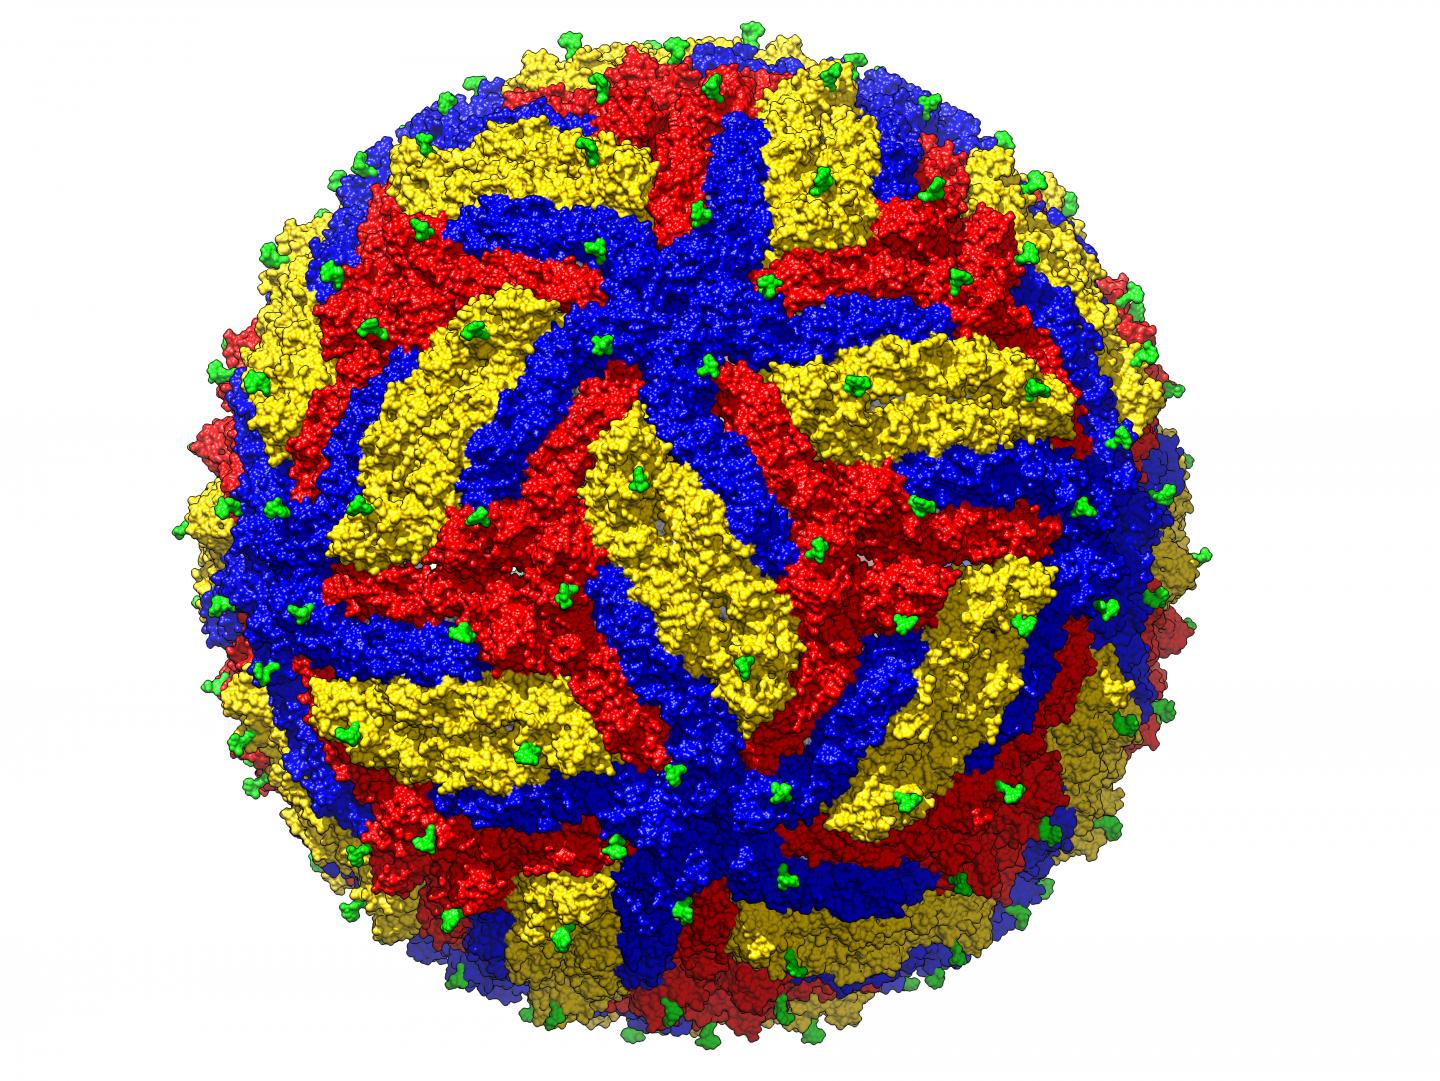 Structure of Zika Virus